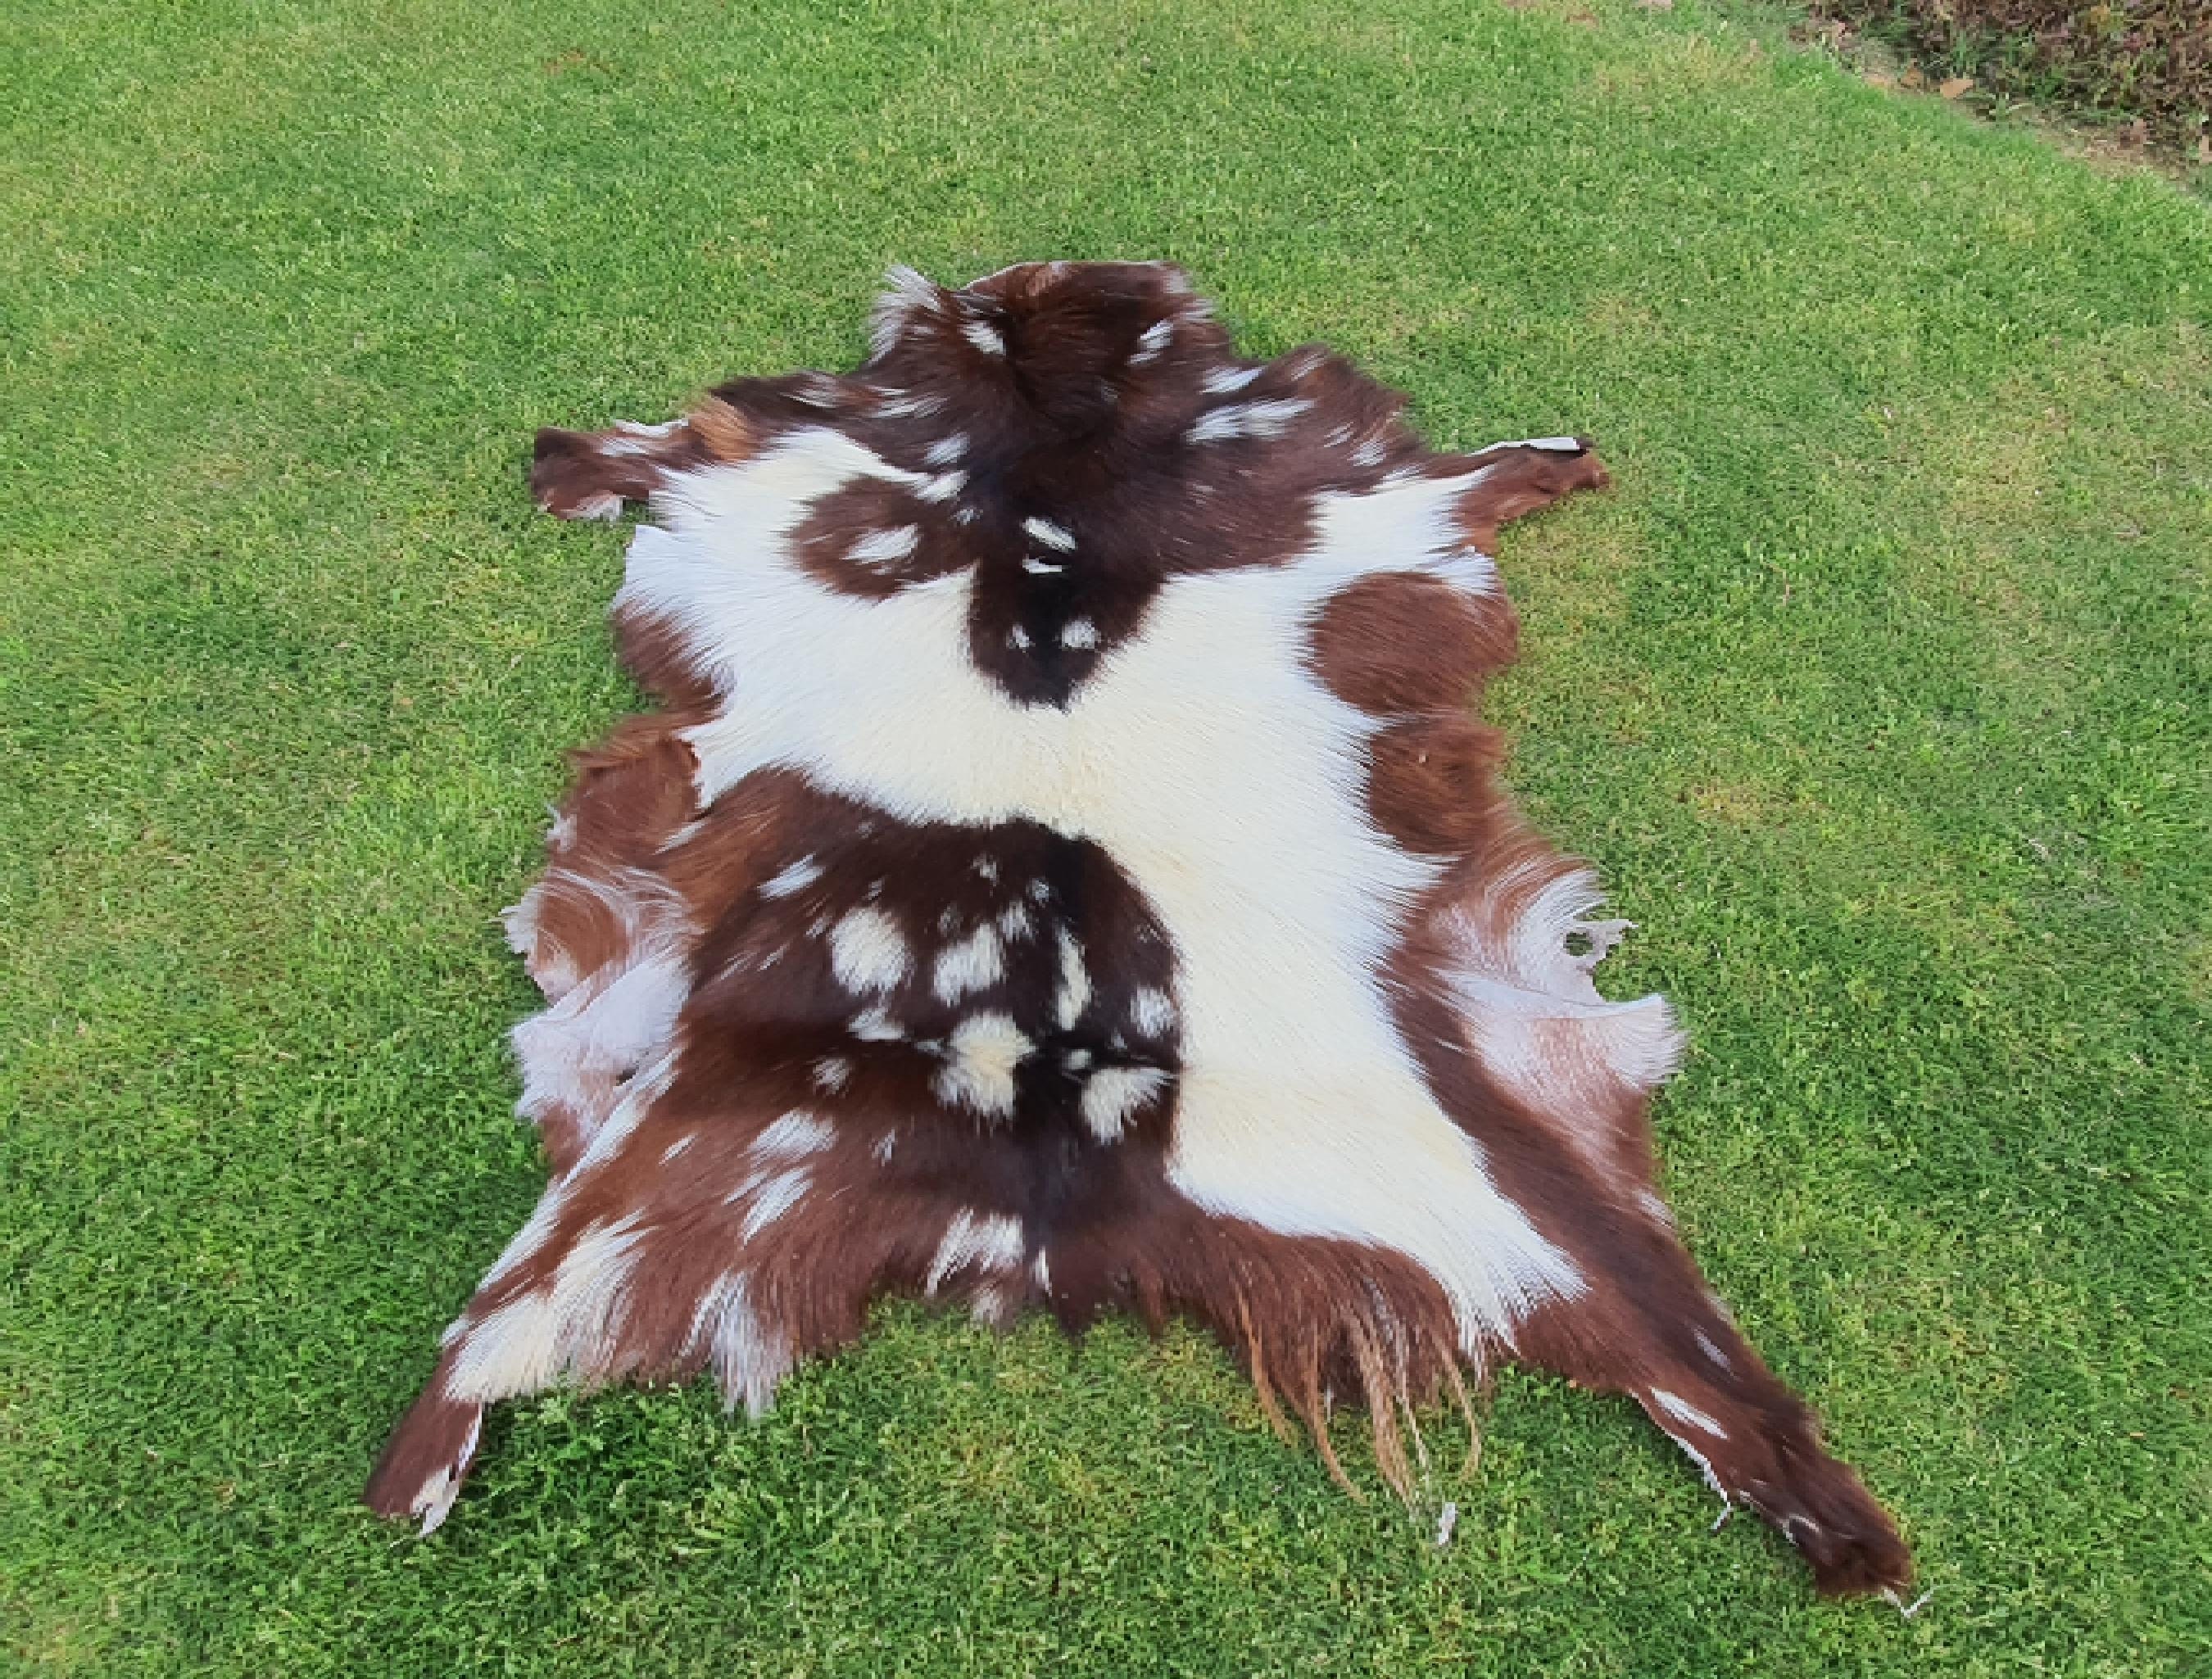 Hair On Deerskin Hide Rug - Tanned Deer Hide with Hair - Grade A